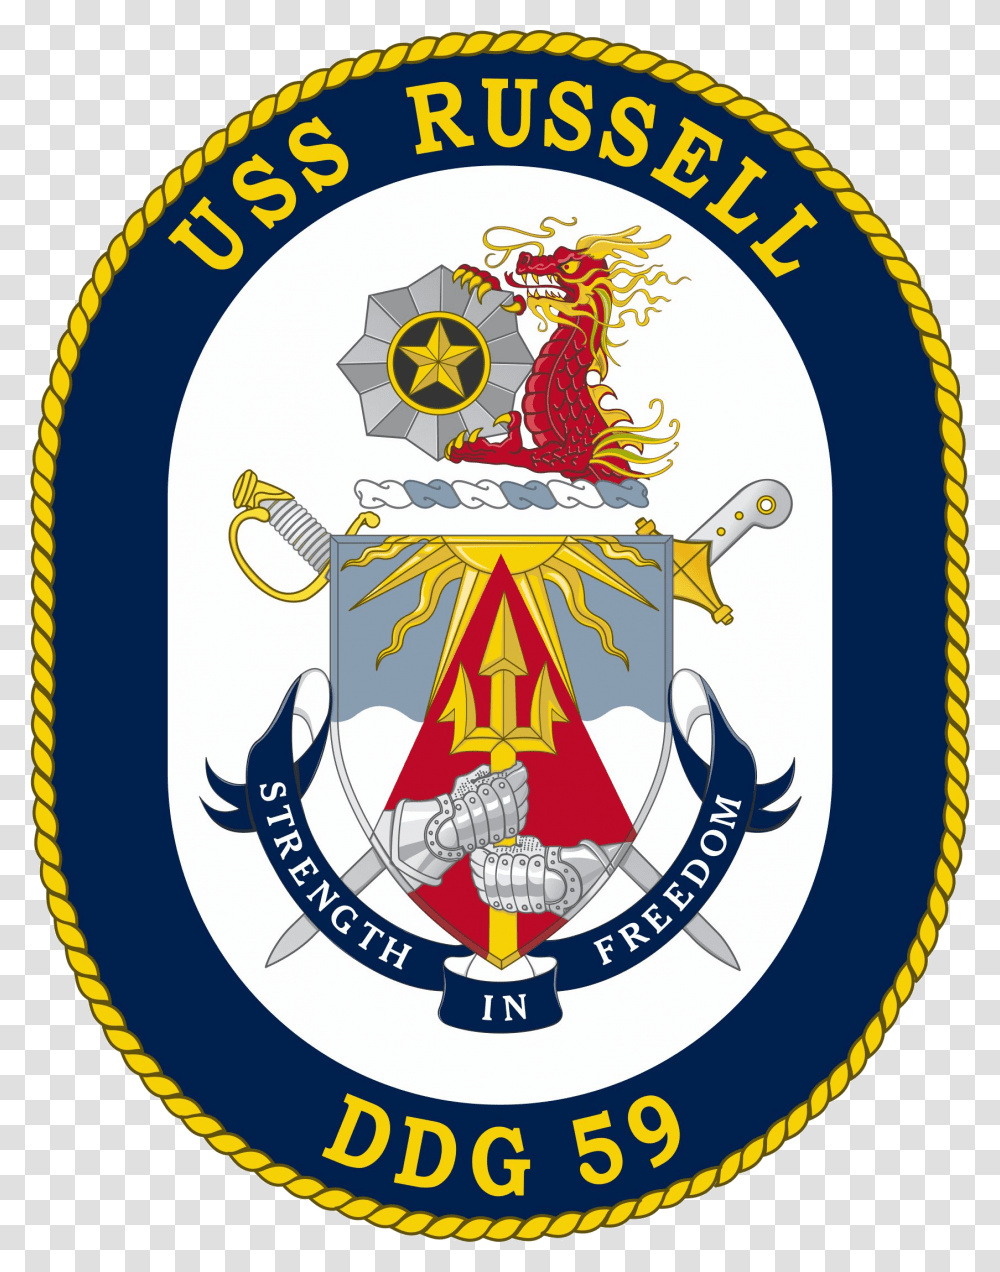 Uss Russell Ddg 59 Crest Thomas Hudner Ddg, Logo, Trademark, Emblem Transparent Png